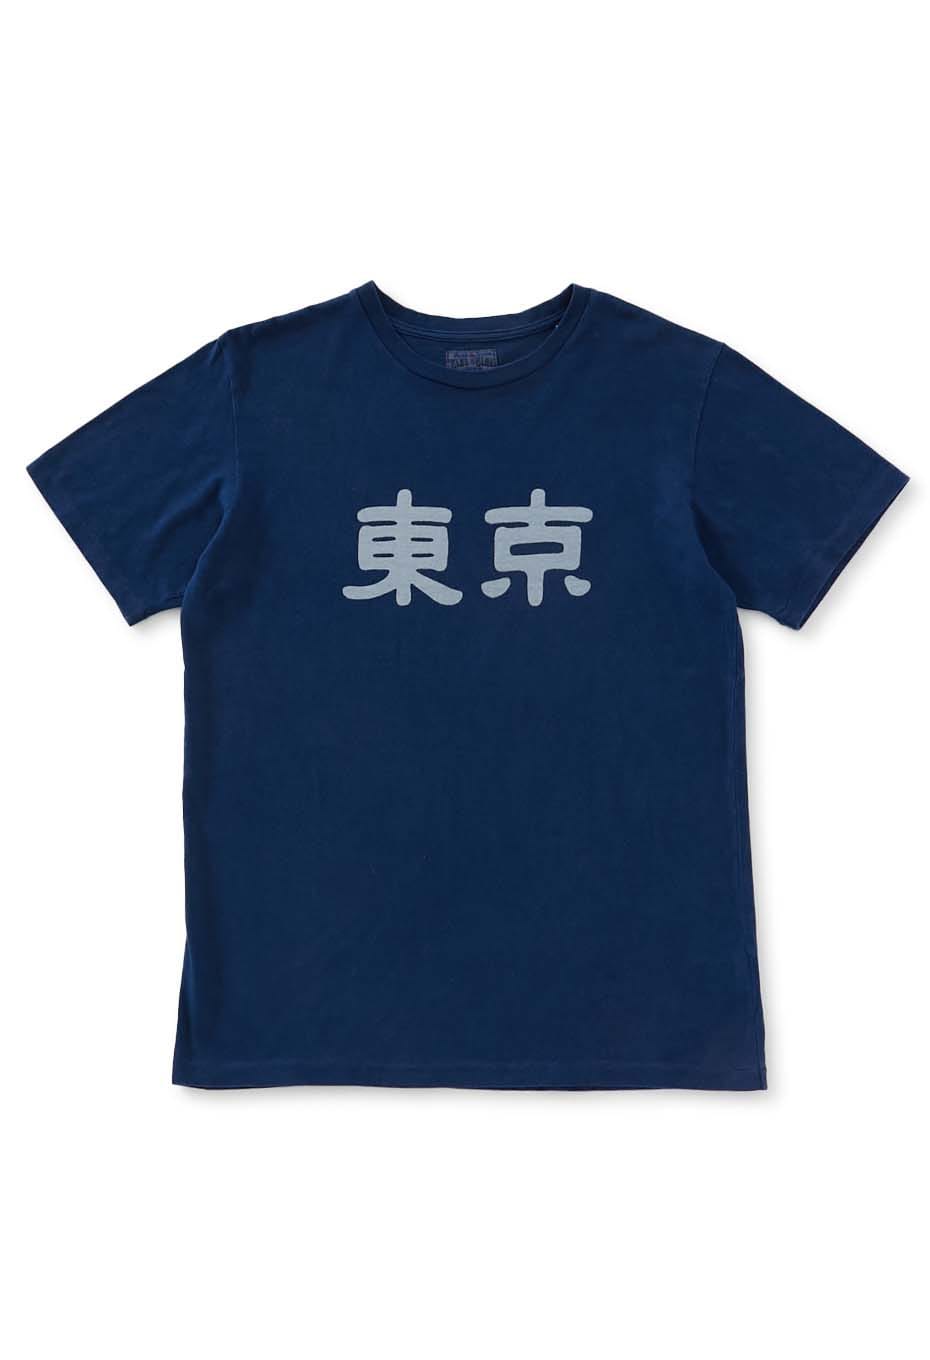 東京 バッセン インディゴ Tシャツ